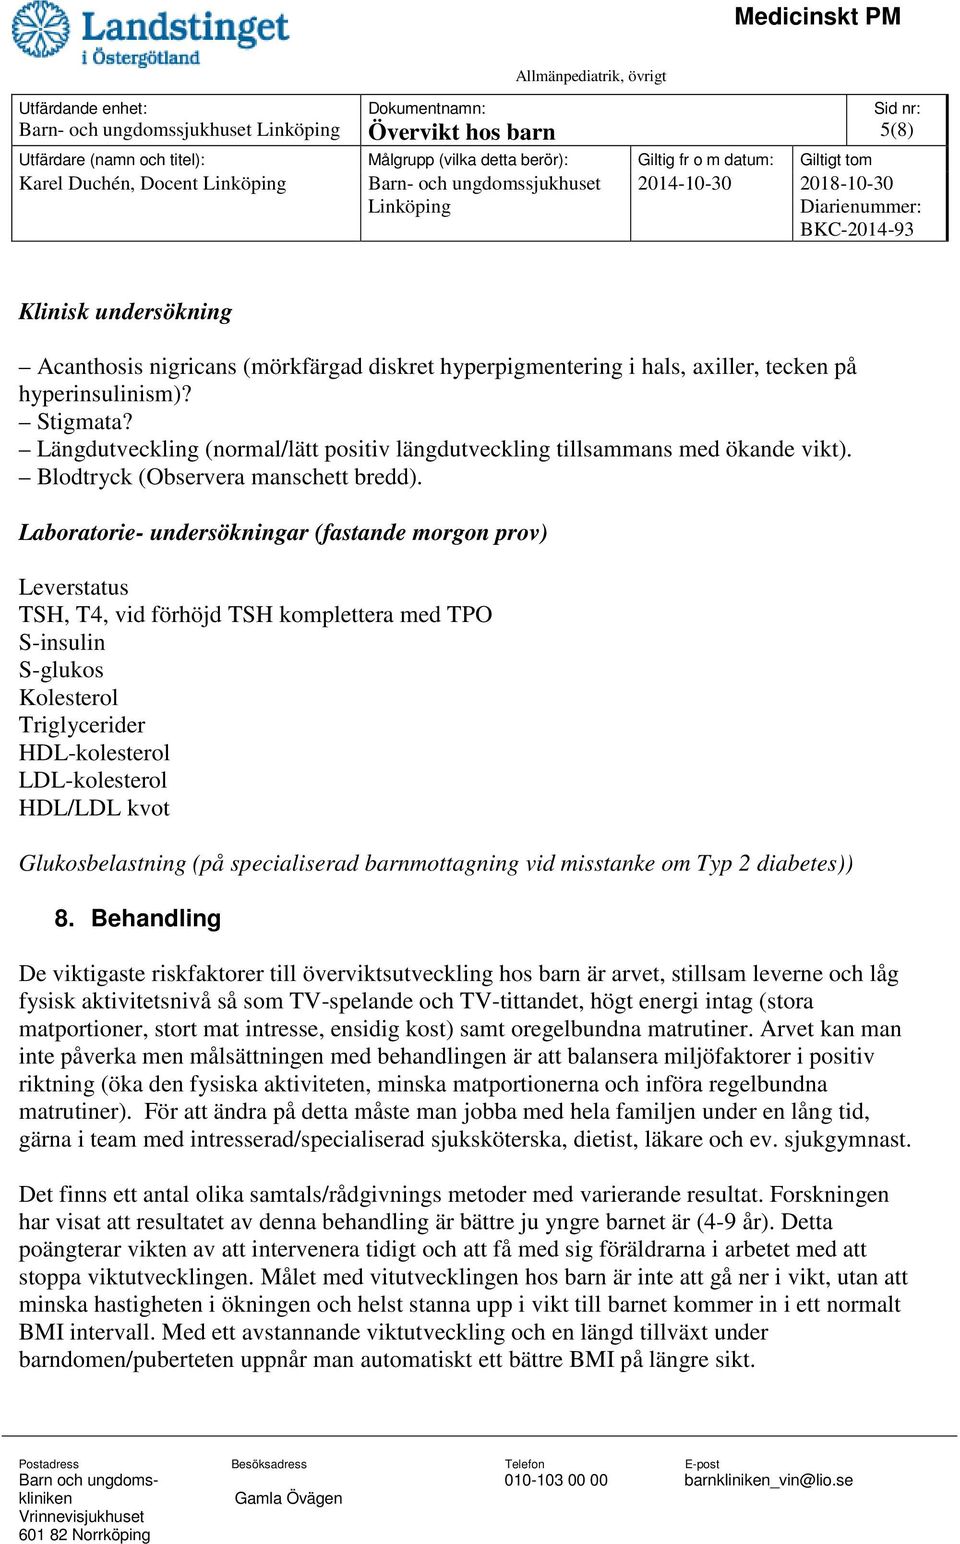 Laboratorie- undersökningar (fastande morgon prov) Leverstatus TSH, T4, vid förhöjd TSH komplettera med TPO S-insulin S-glukos Kolesterol Triglycerider HDL-kolesterol LDL-kolesterol HDL/LDL kvot